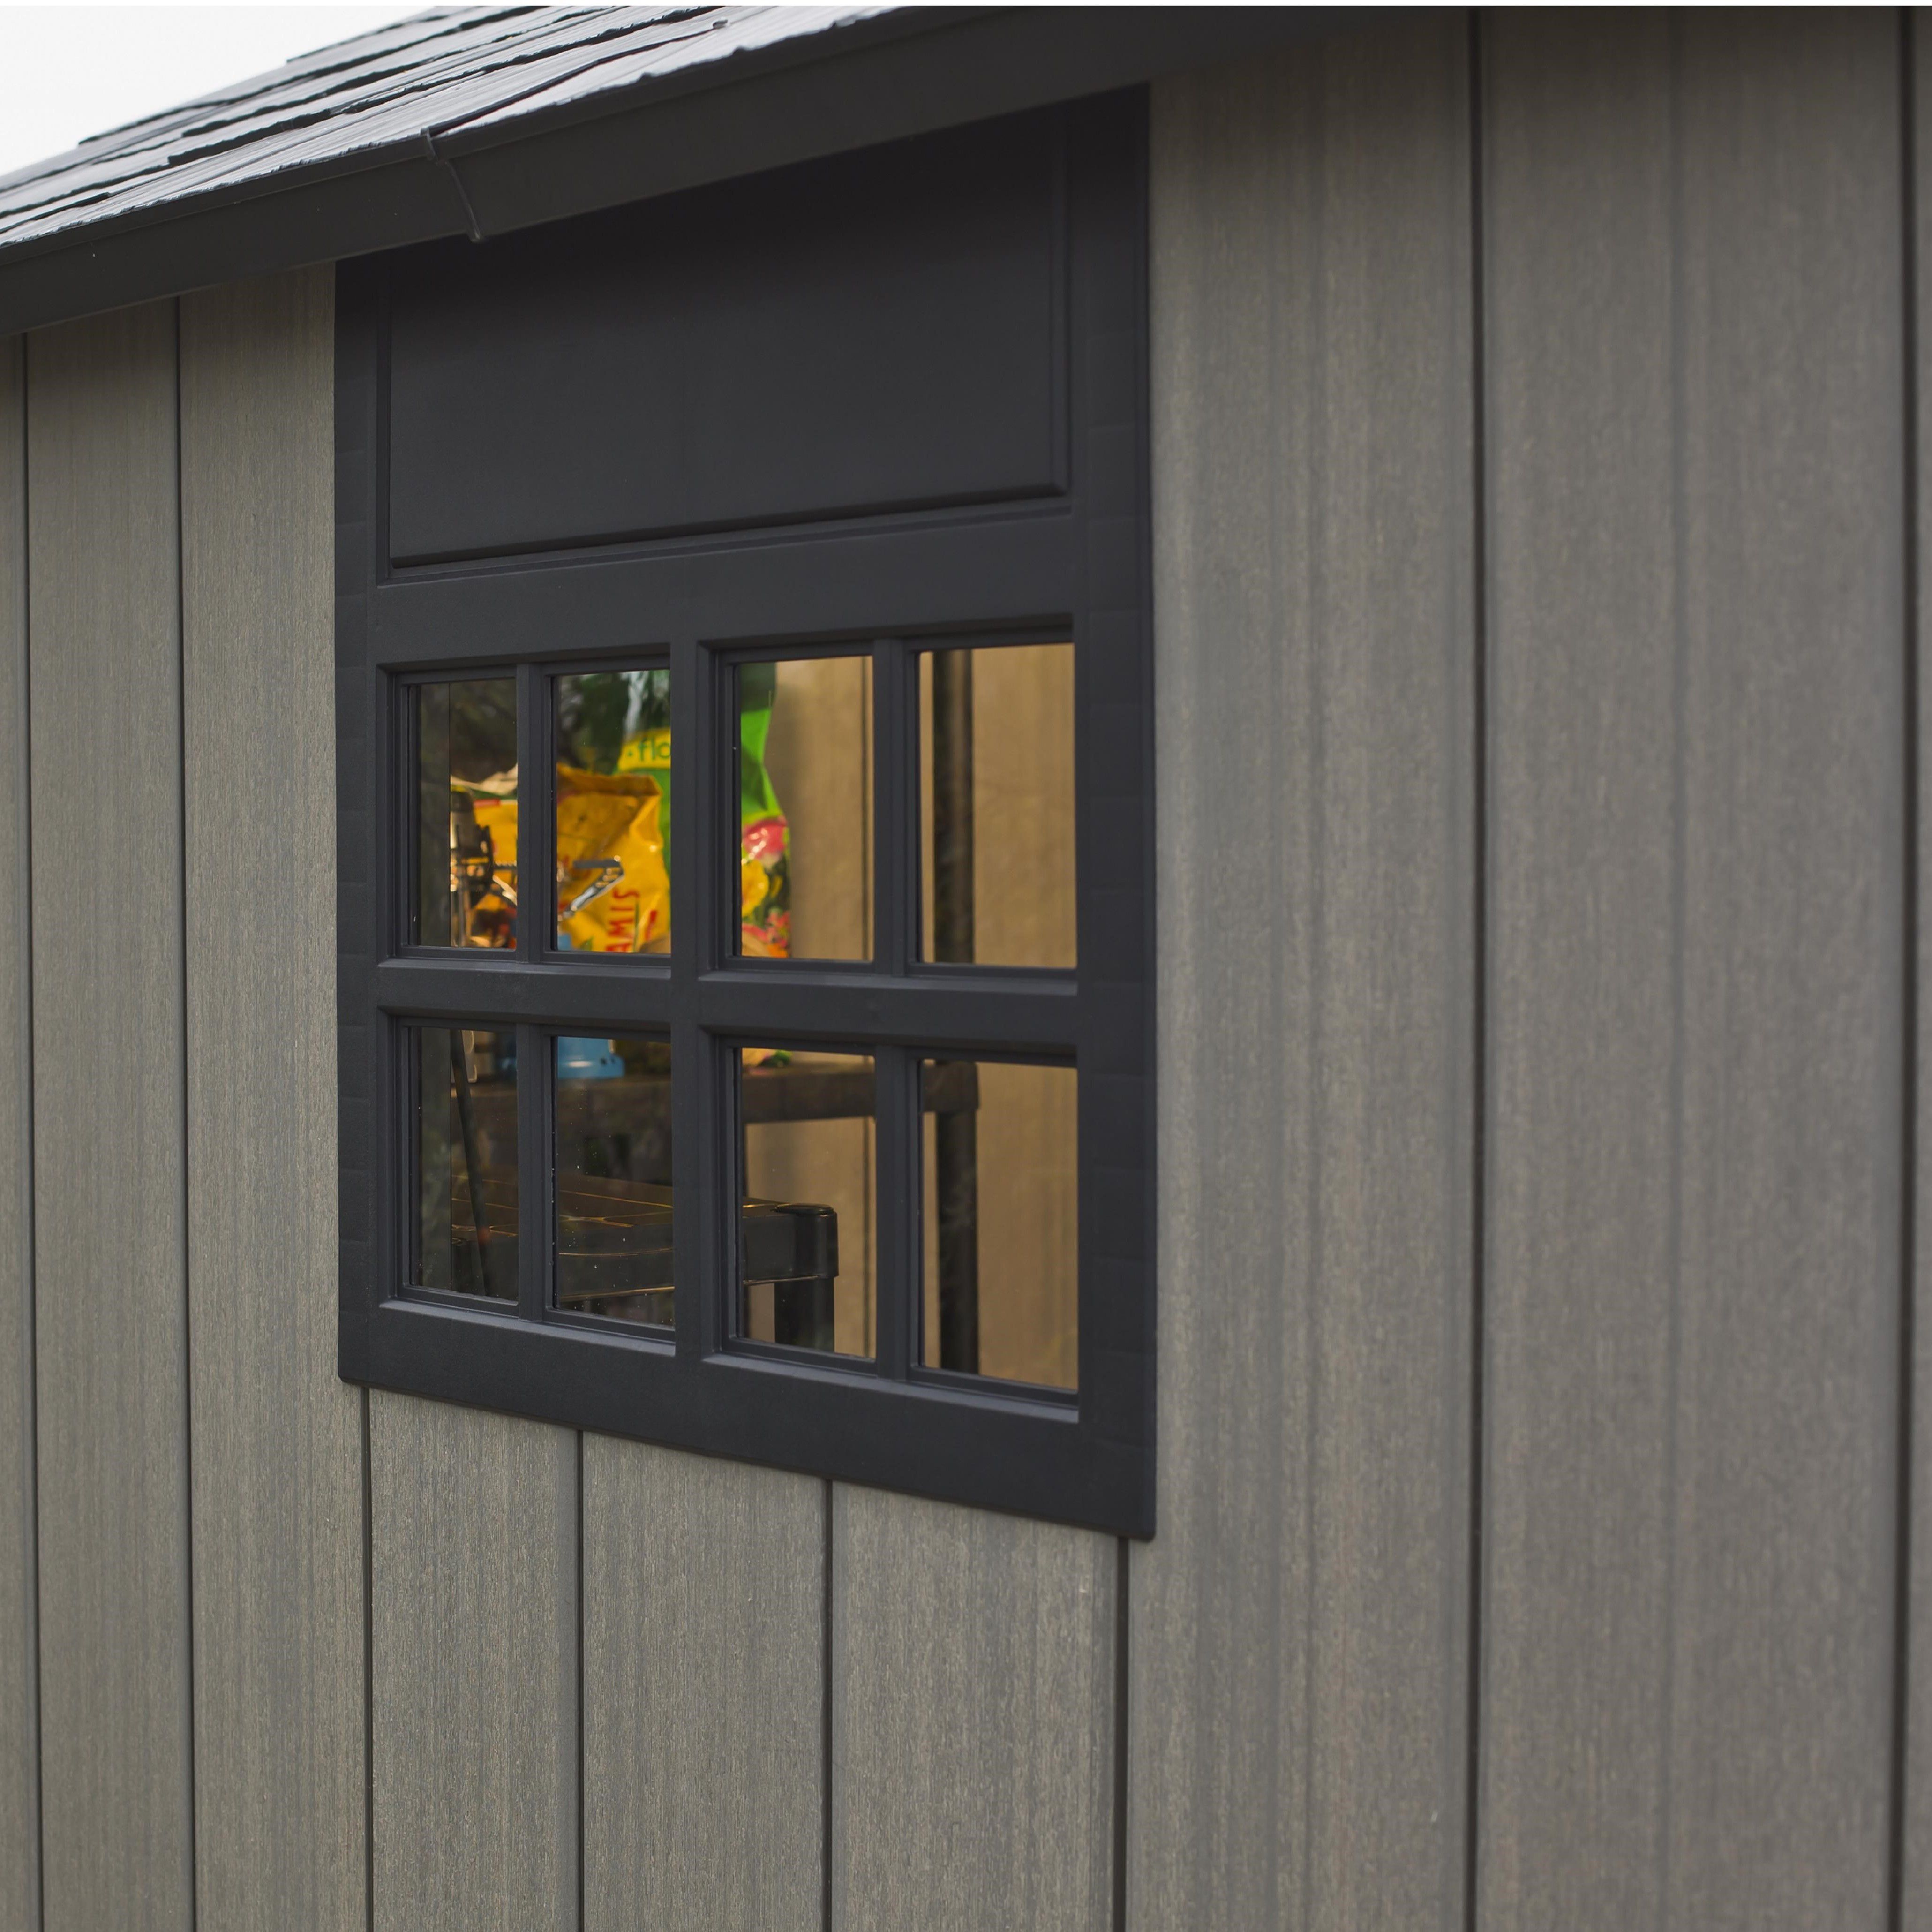 Keter Oakland Apex Grey Plastic 2 door Shed with floor & 2 windows